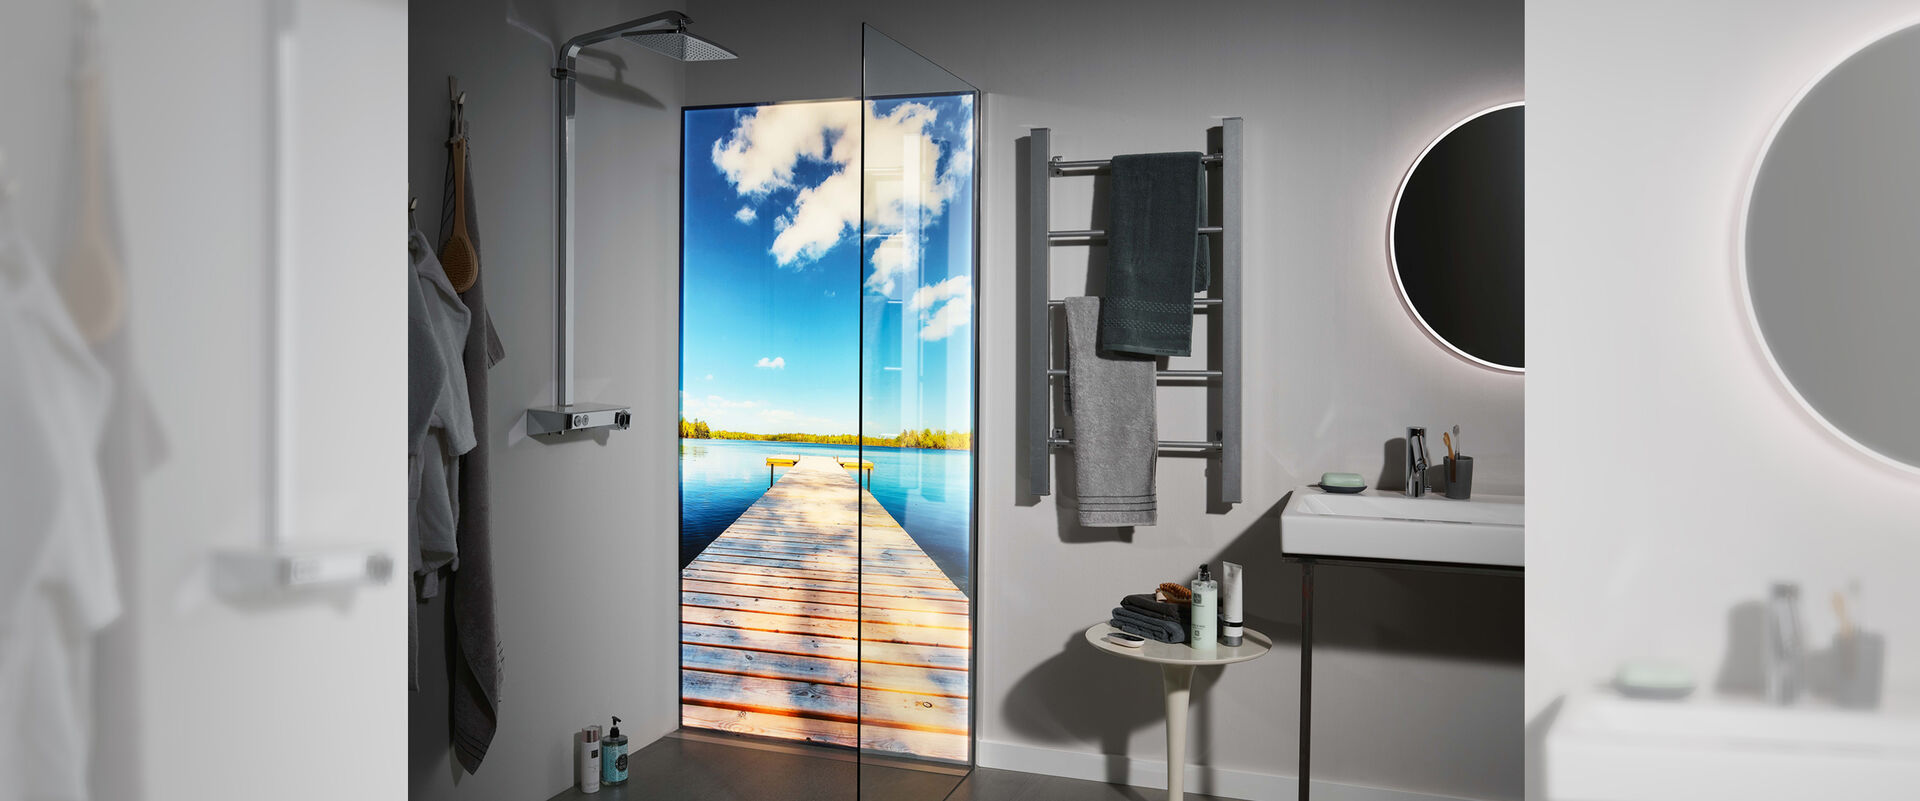 Dusche, in der eine Premium LED Duschwand von Spritz installiert ist, auf der ein Steg, der aufs Meer hinaufführt abgebildet ist. Die Dusche befindet sich in einem ansonsten grau gehaltenem Badezimmer. Links von der Dusche ist ein Handtuchhalter, darunter ein Tisch als Ablagemöglichkeit sowie ein Waschbecken mit Spiegel zu erkennen.